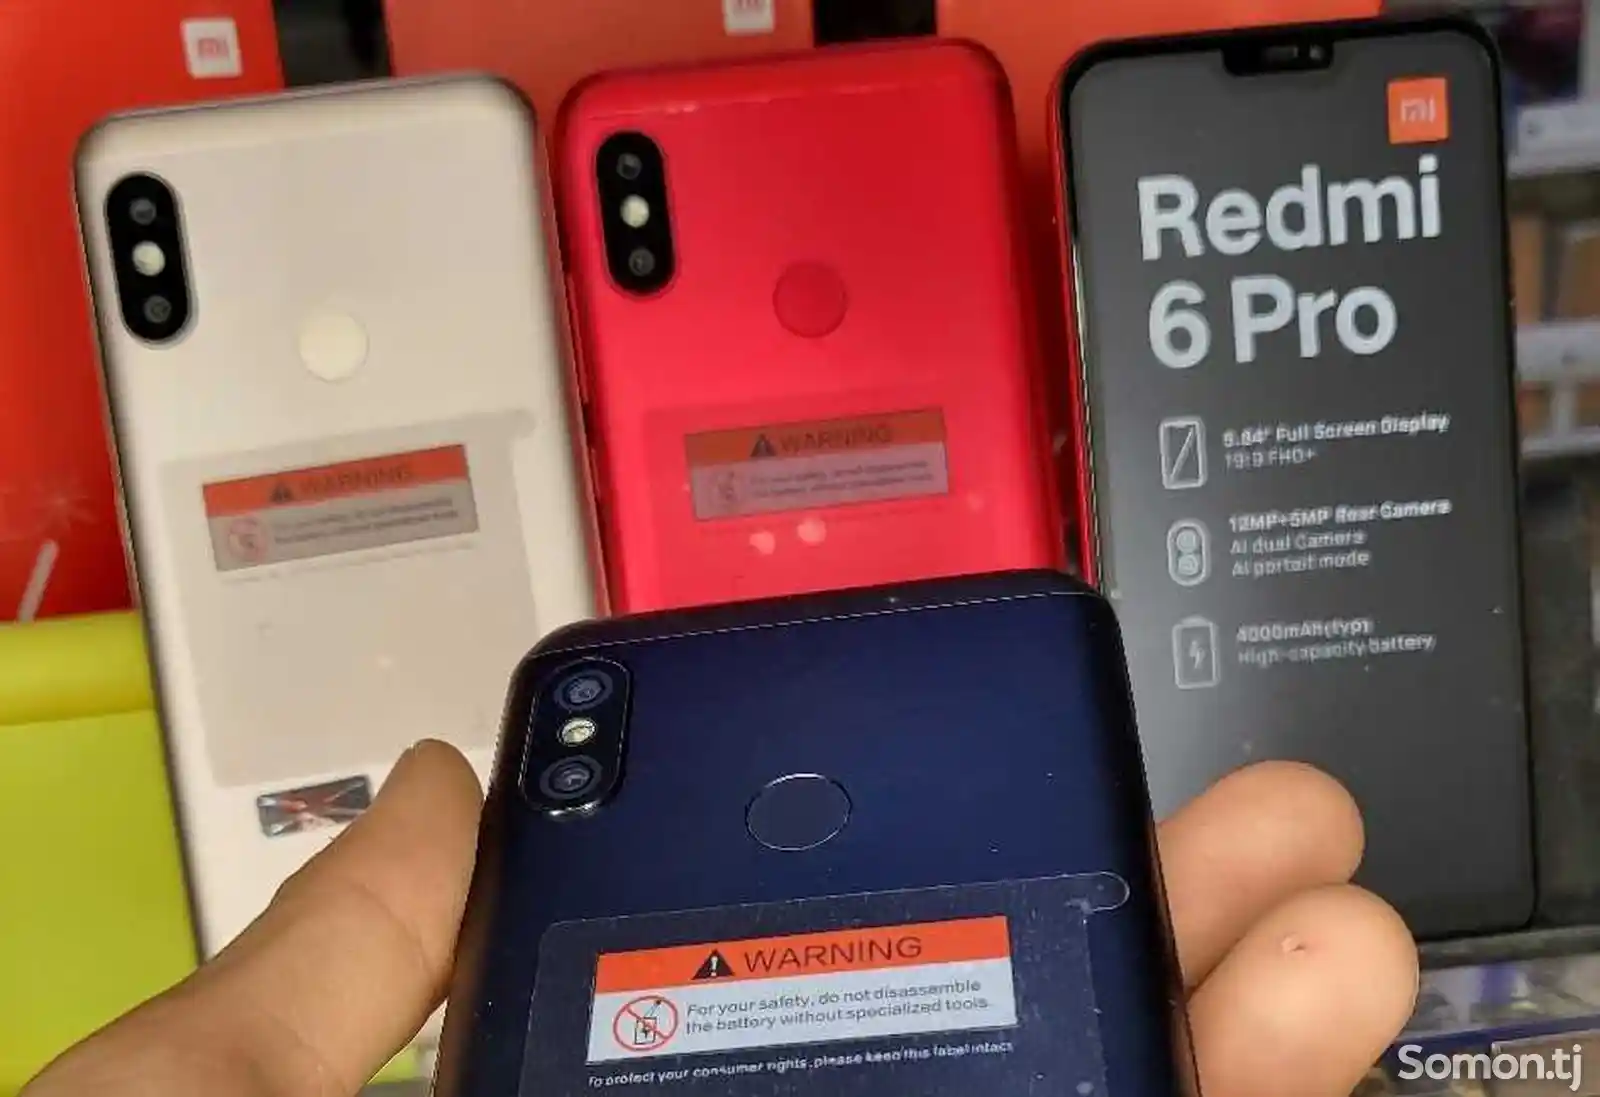 Xiaomi Redmi 6 Рro, 64gb-3